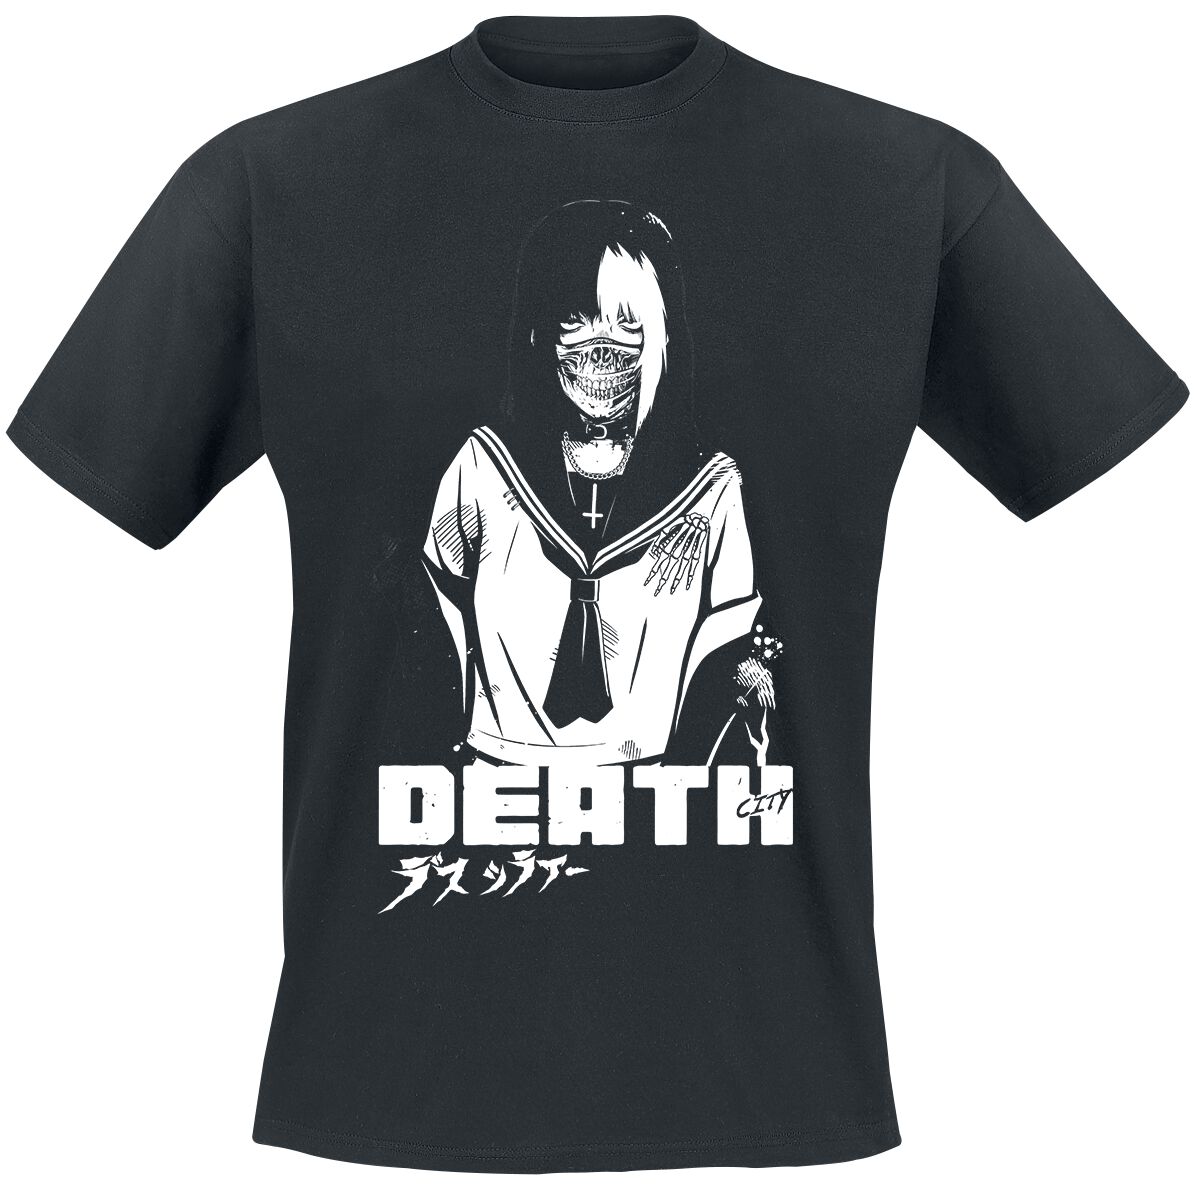 Zombie Makeout Club T-Shirt - ZMC - Death - S bis XXL - für Männer - Größe L - schwarz  - Lizenzierter Fanartikel